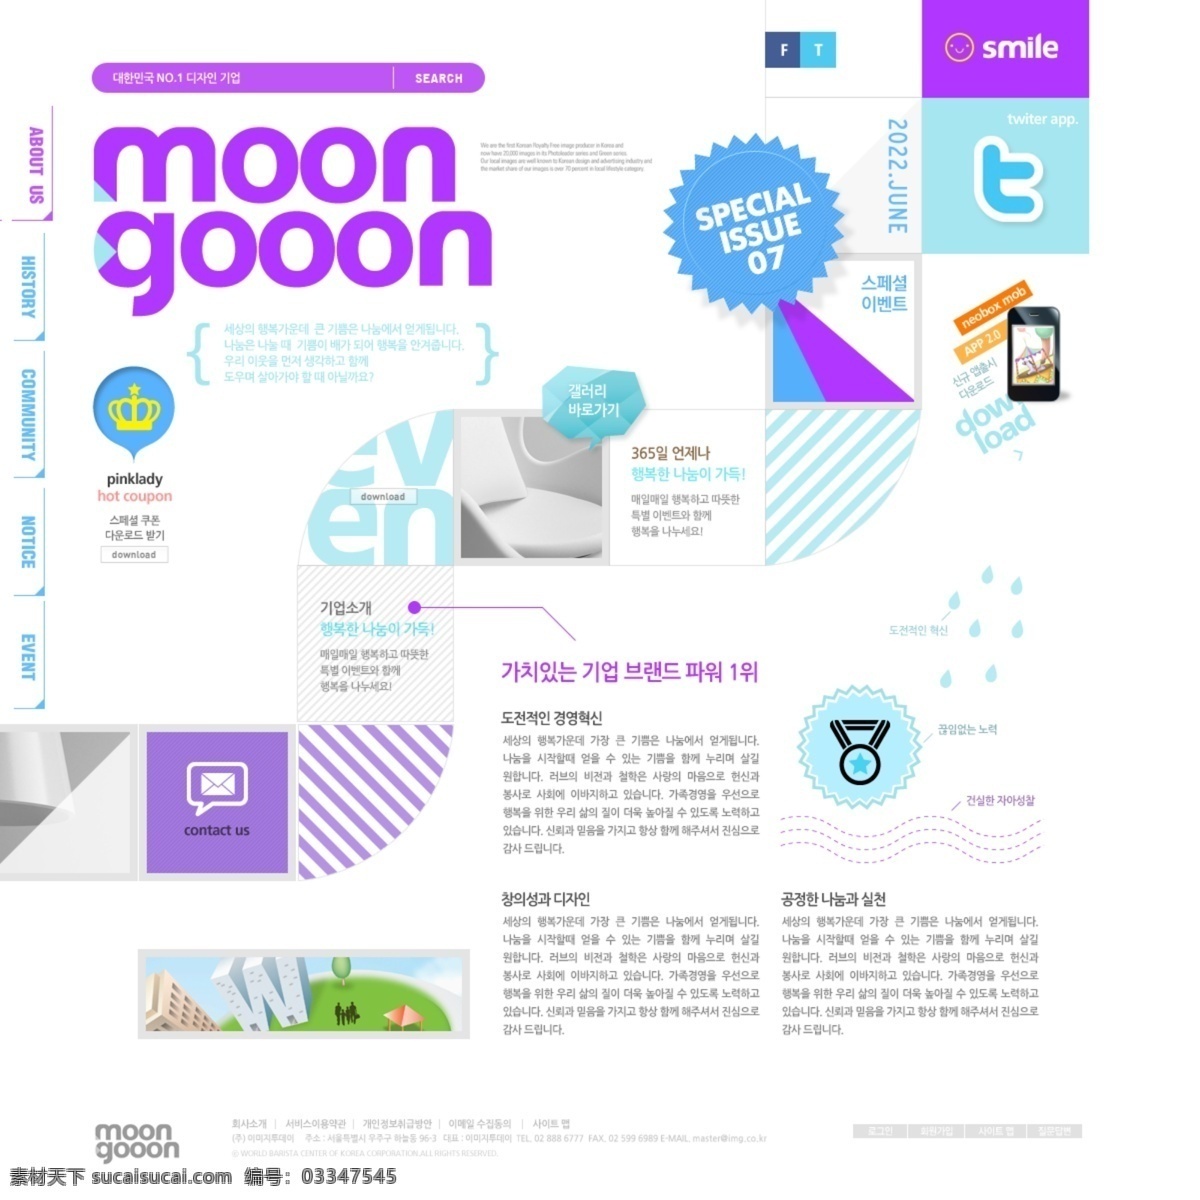 个性创意网站 扁平化风格 win8风格 橙色网站 科技网站 韩文模板 web 界面设计 白色